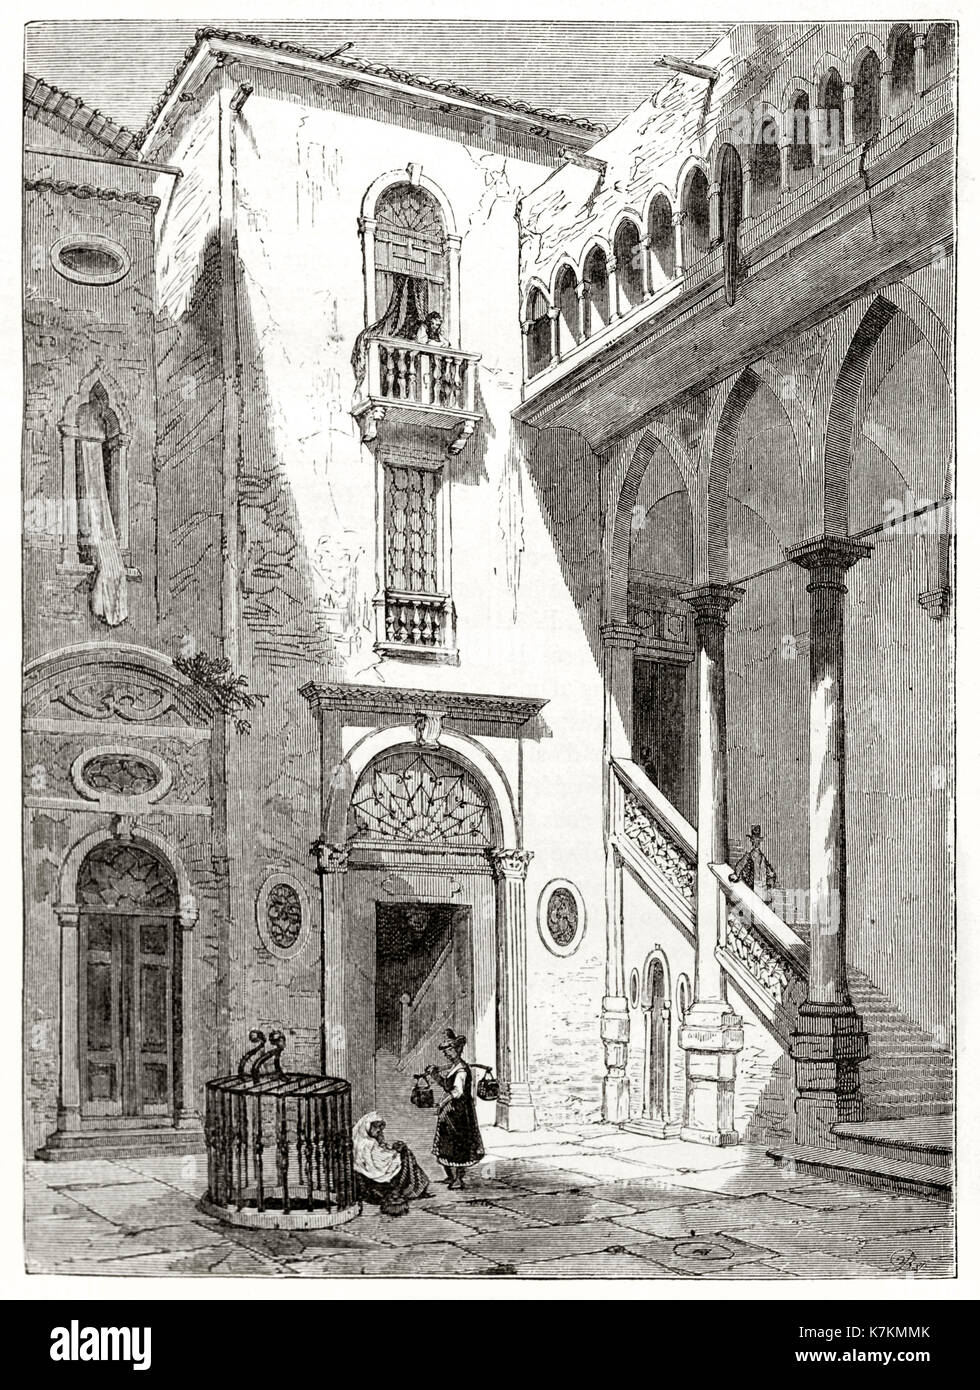 Vue de l'ancien Palazzo da Mula cour, Venise, Italie. Par Girardet après de Beaumont, publ. sur le Tour du Monde, Paris, 1862 Banque D'Images